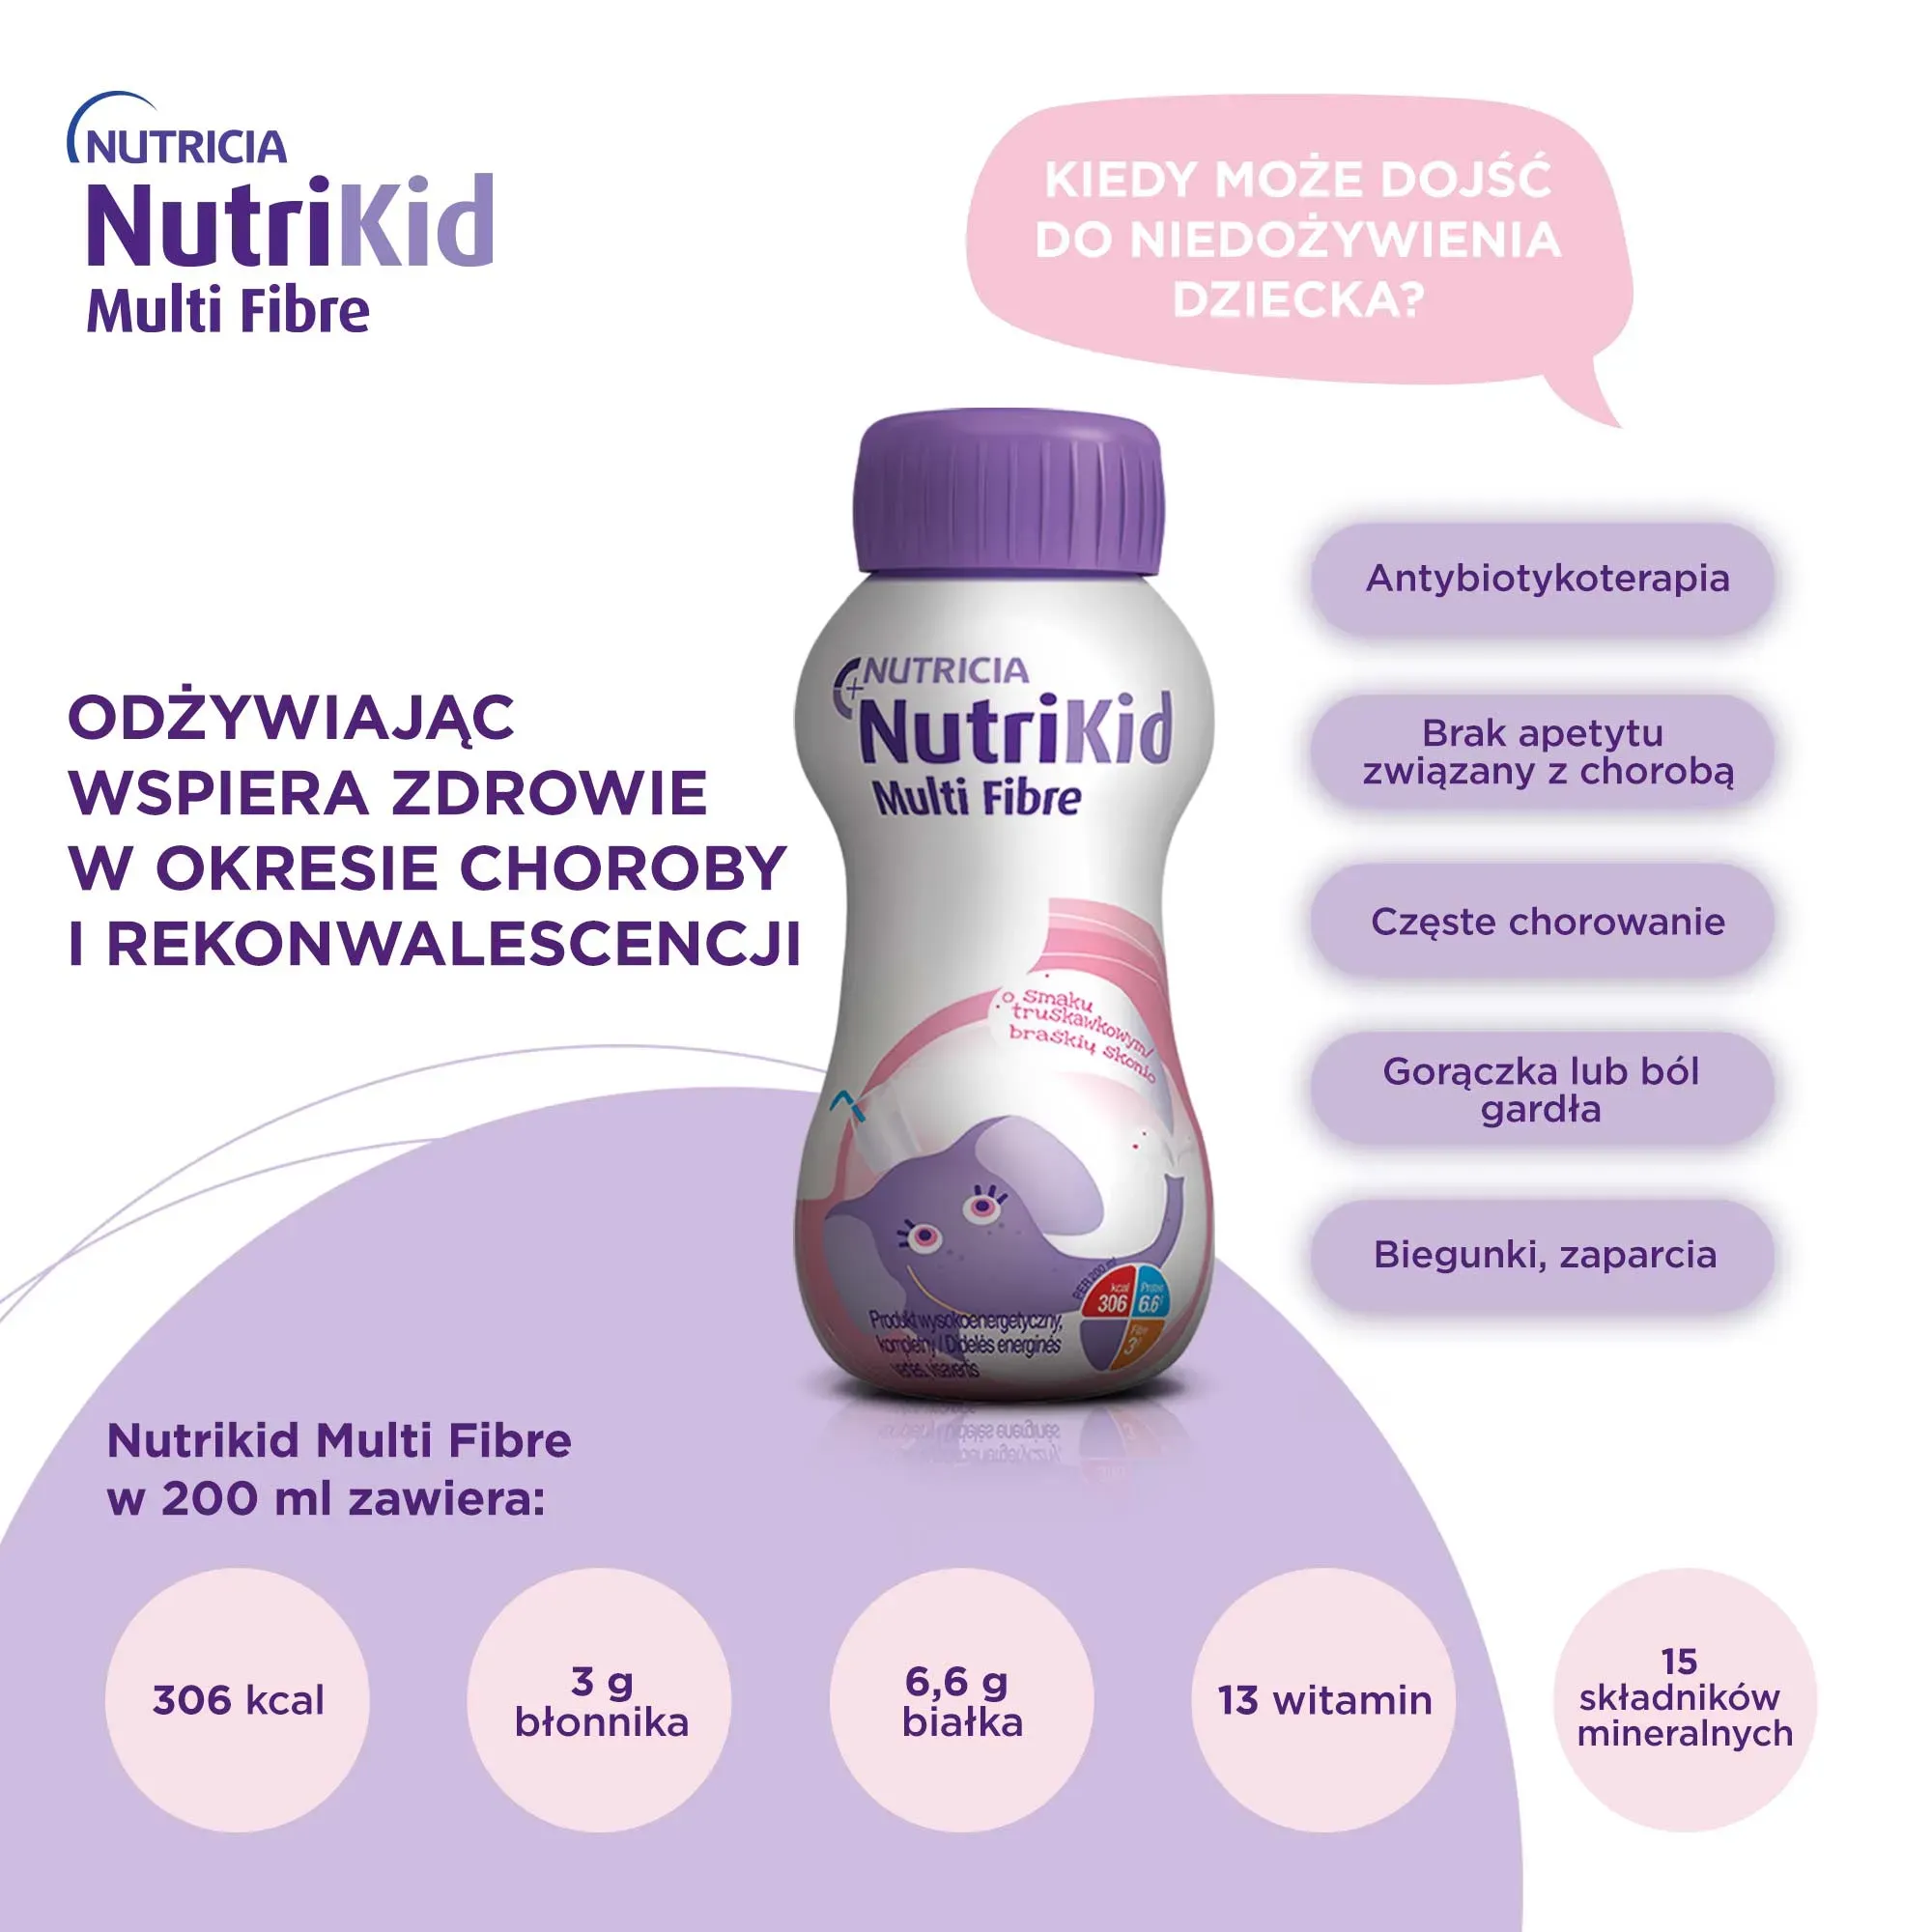 NutriKid Multi Fibre, smak truskawkowy, 200 ml 